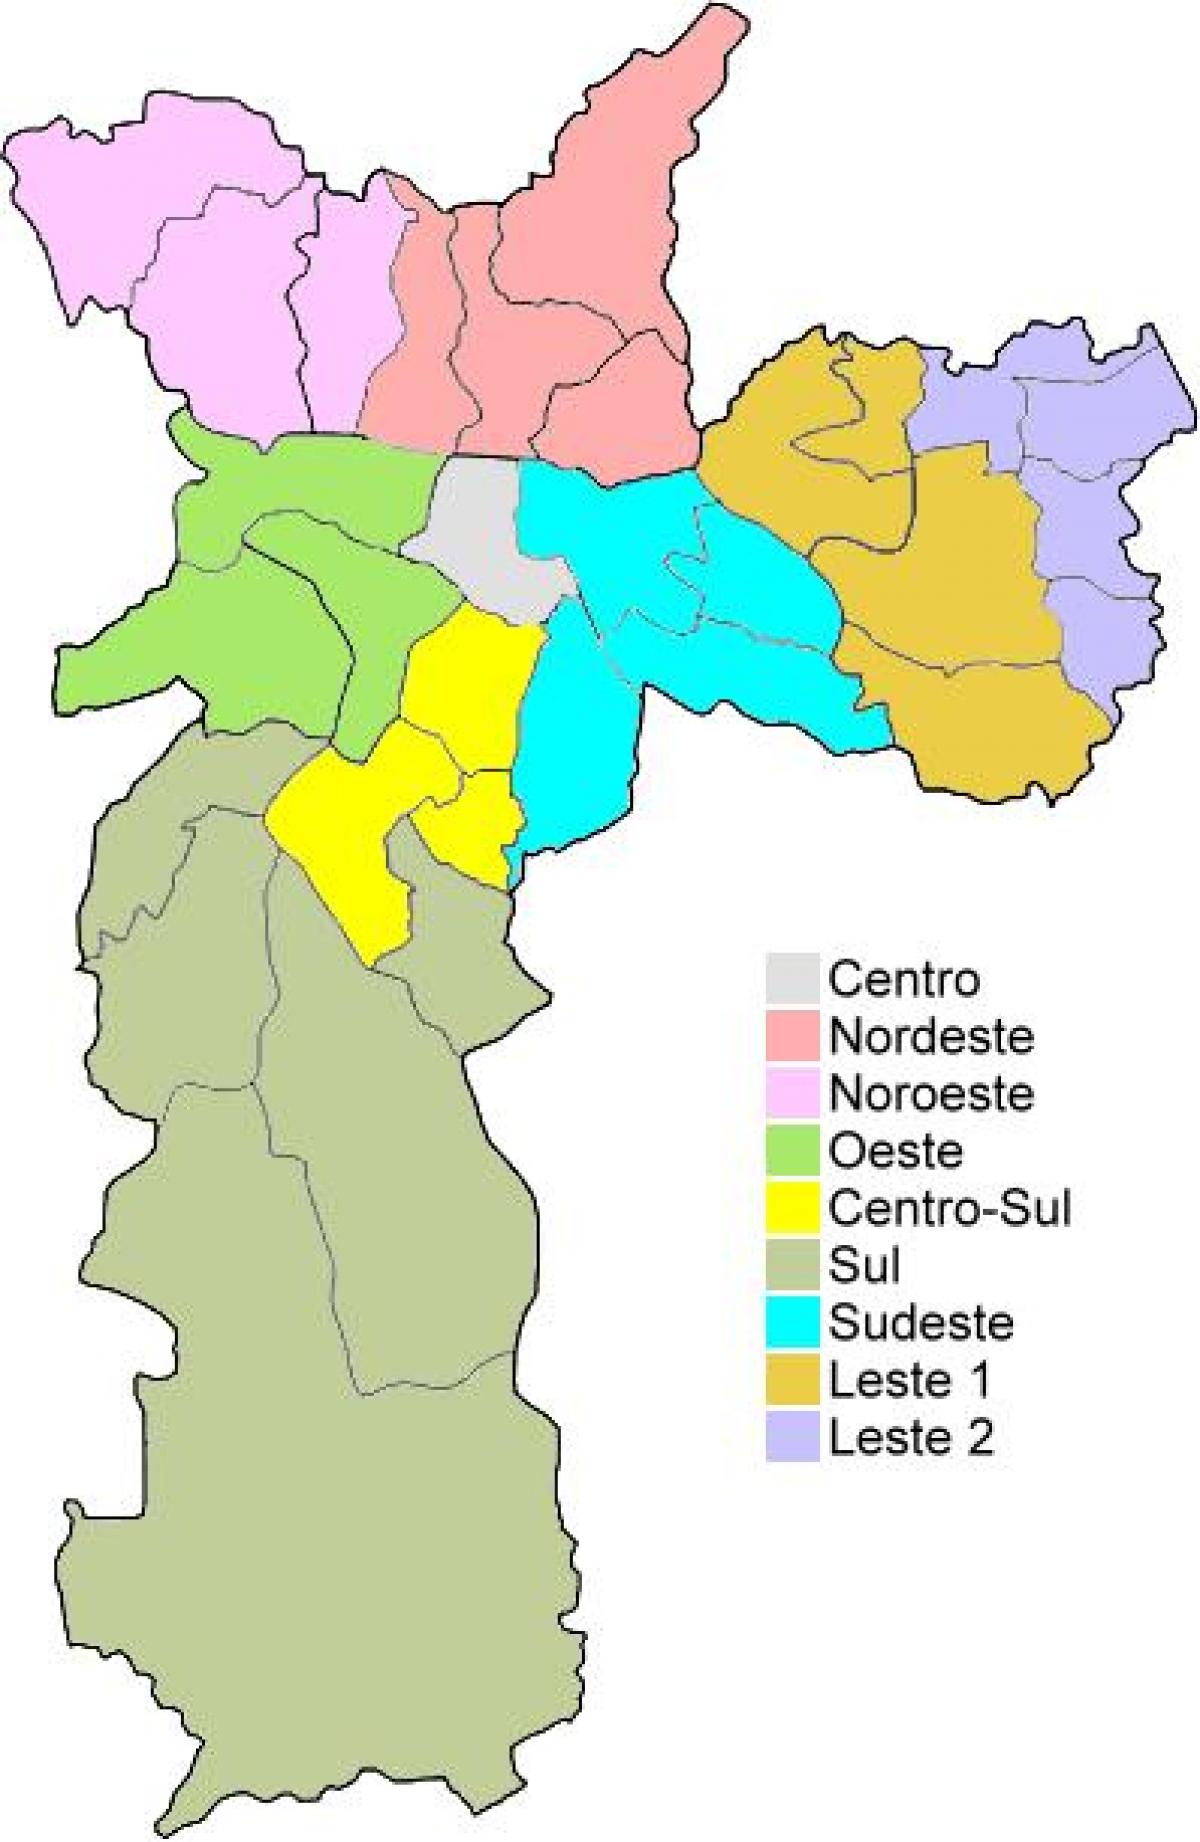 Peta administrasi wilayah di São Paulo